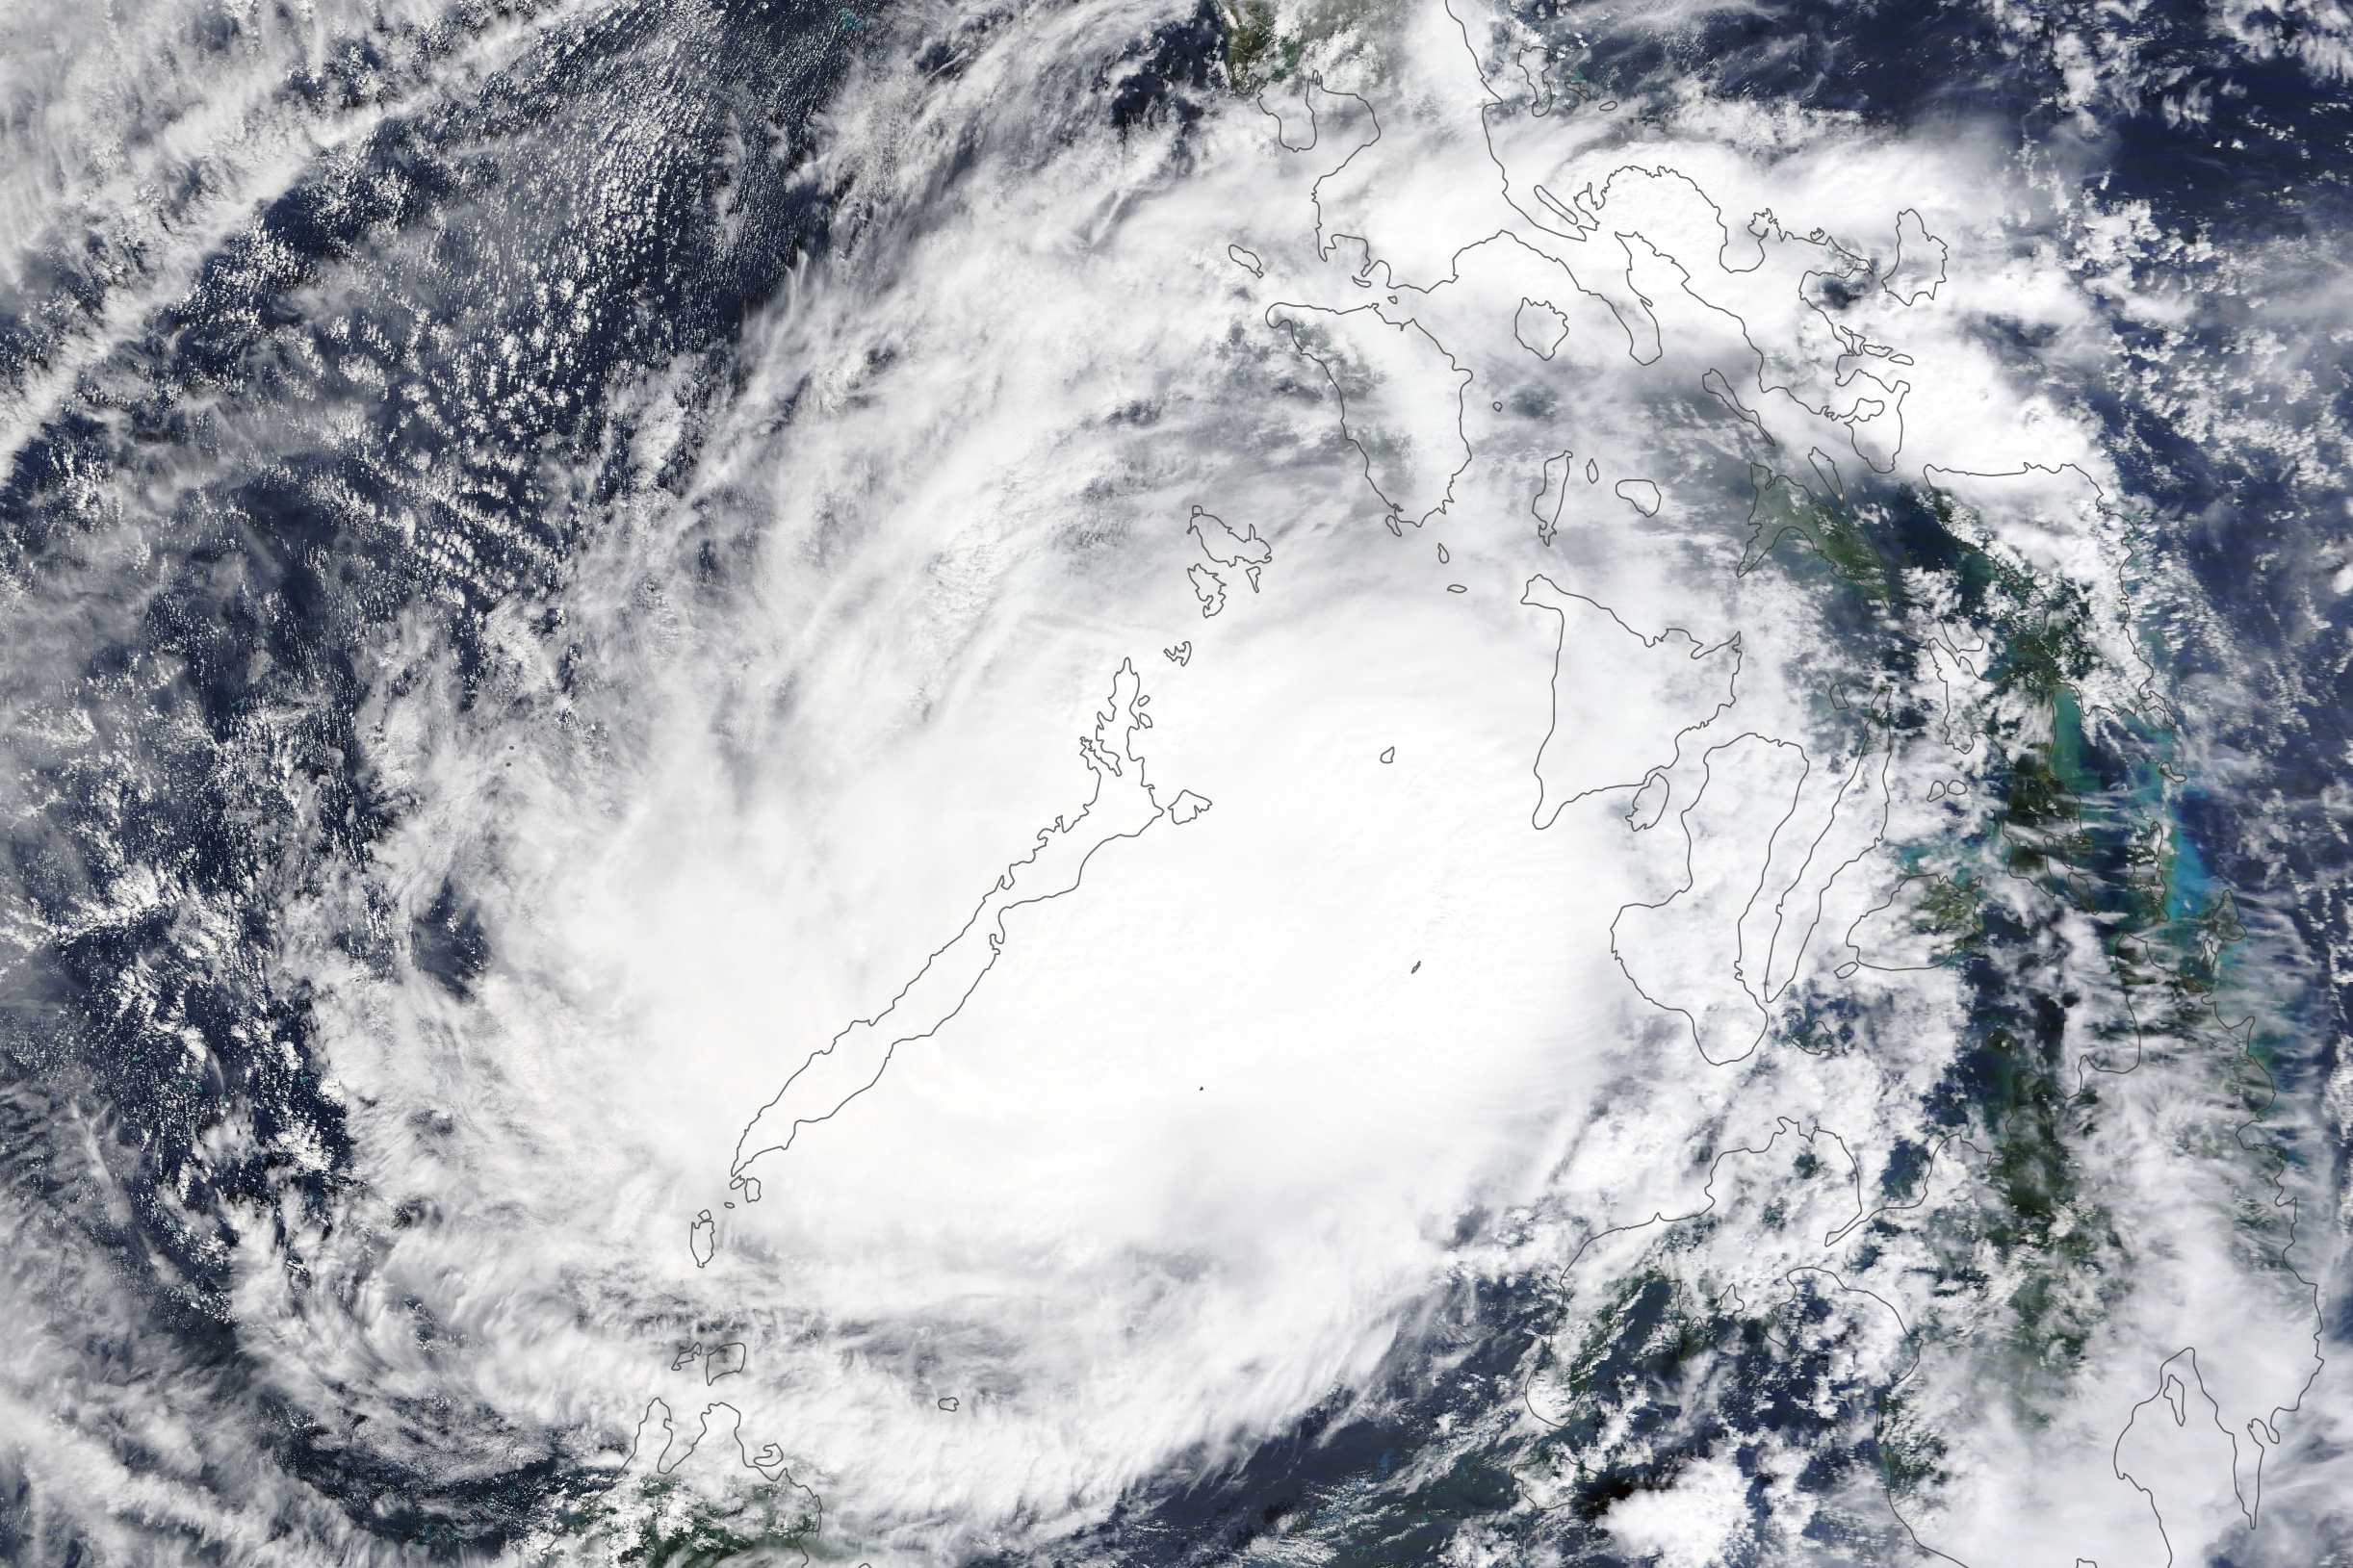 Rai typhoon Typhoon Rai